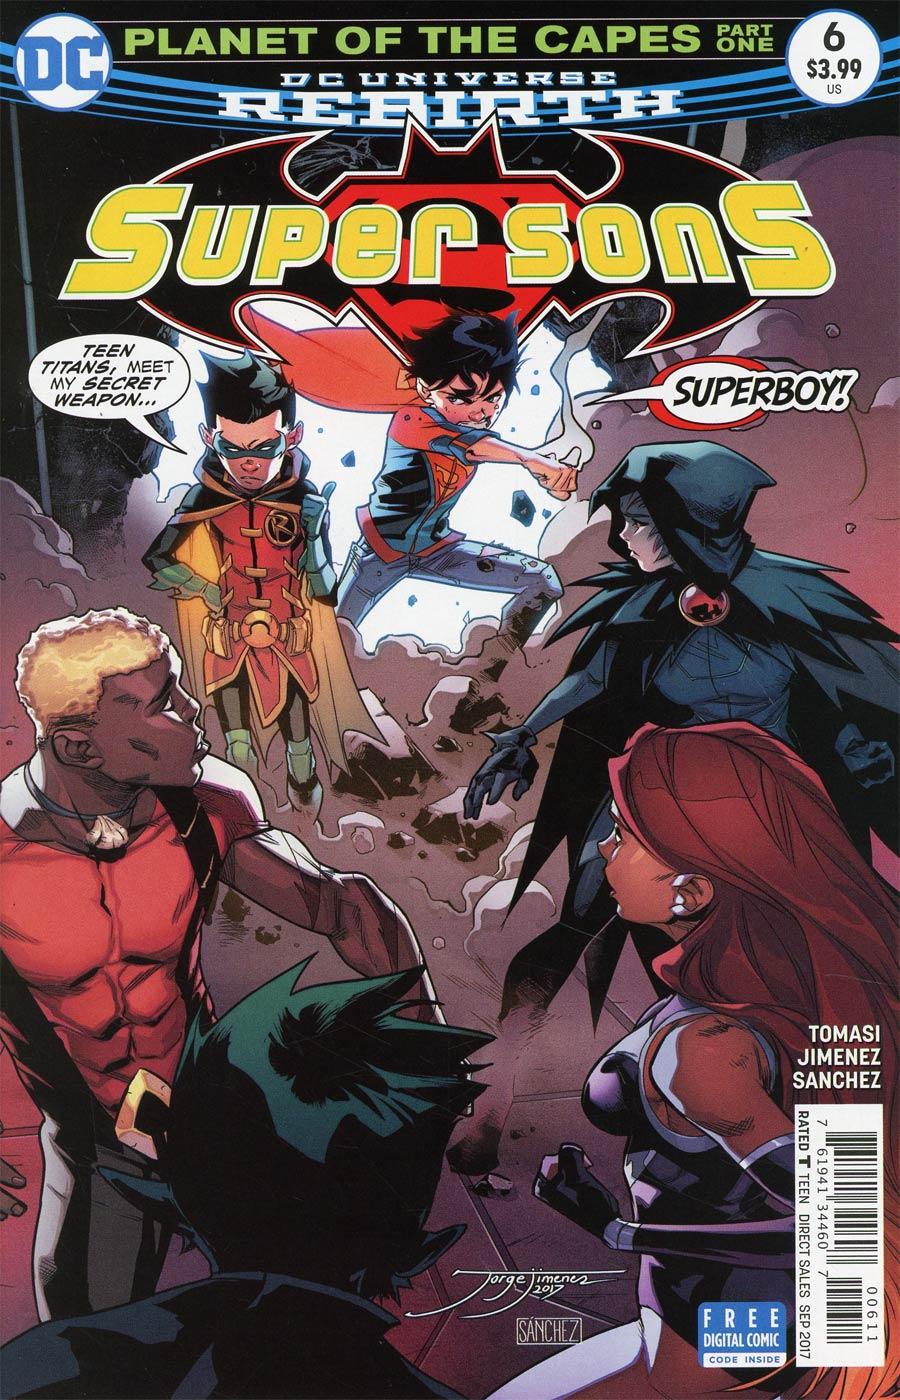 Super Sons Vol. 1 #6